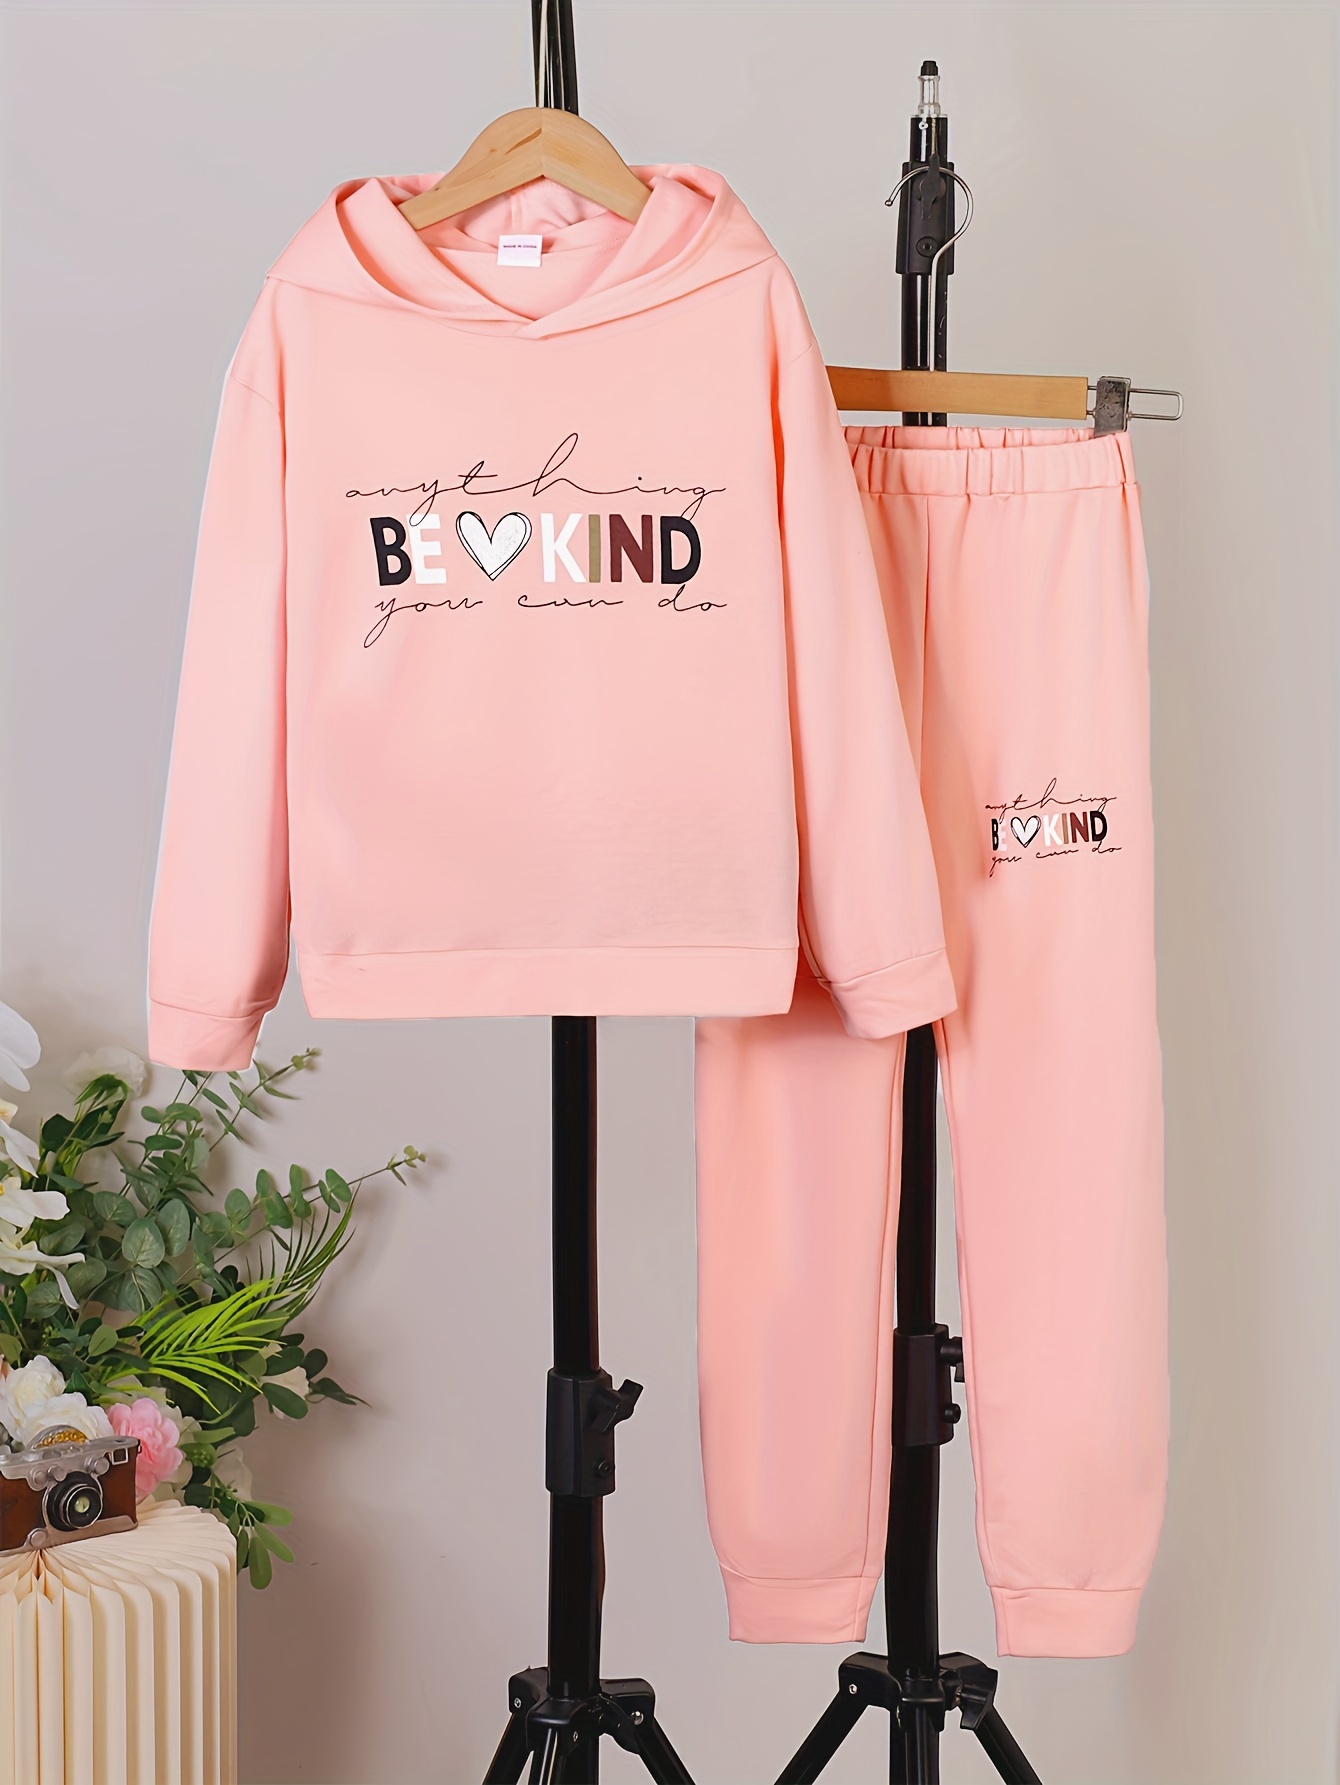 Series 2 Sweatpants - Pink  Pink hoodie, Teenage fashion outfits, Hoodies